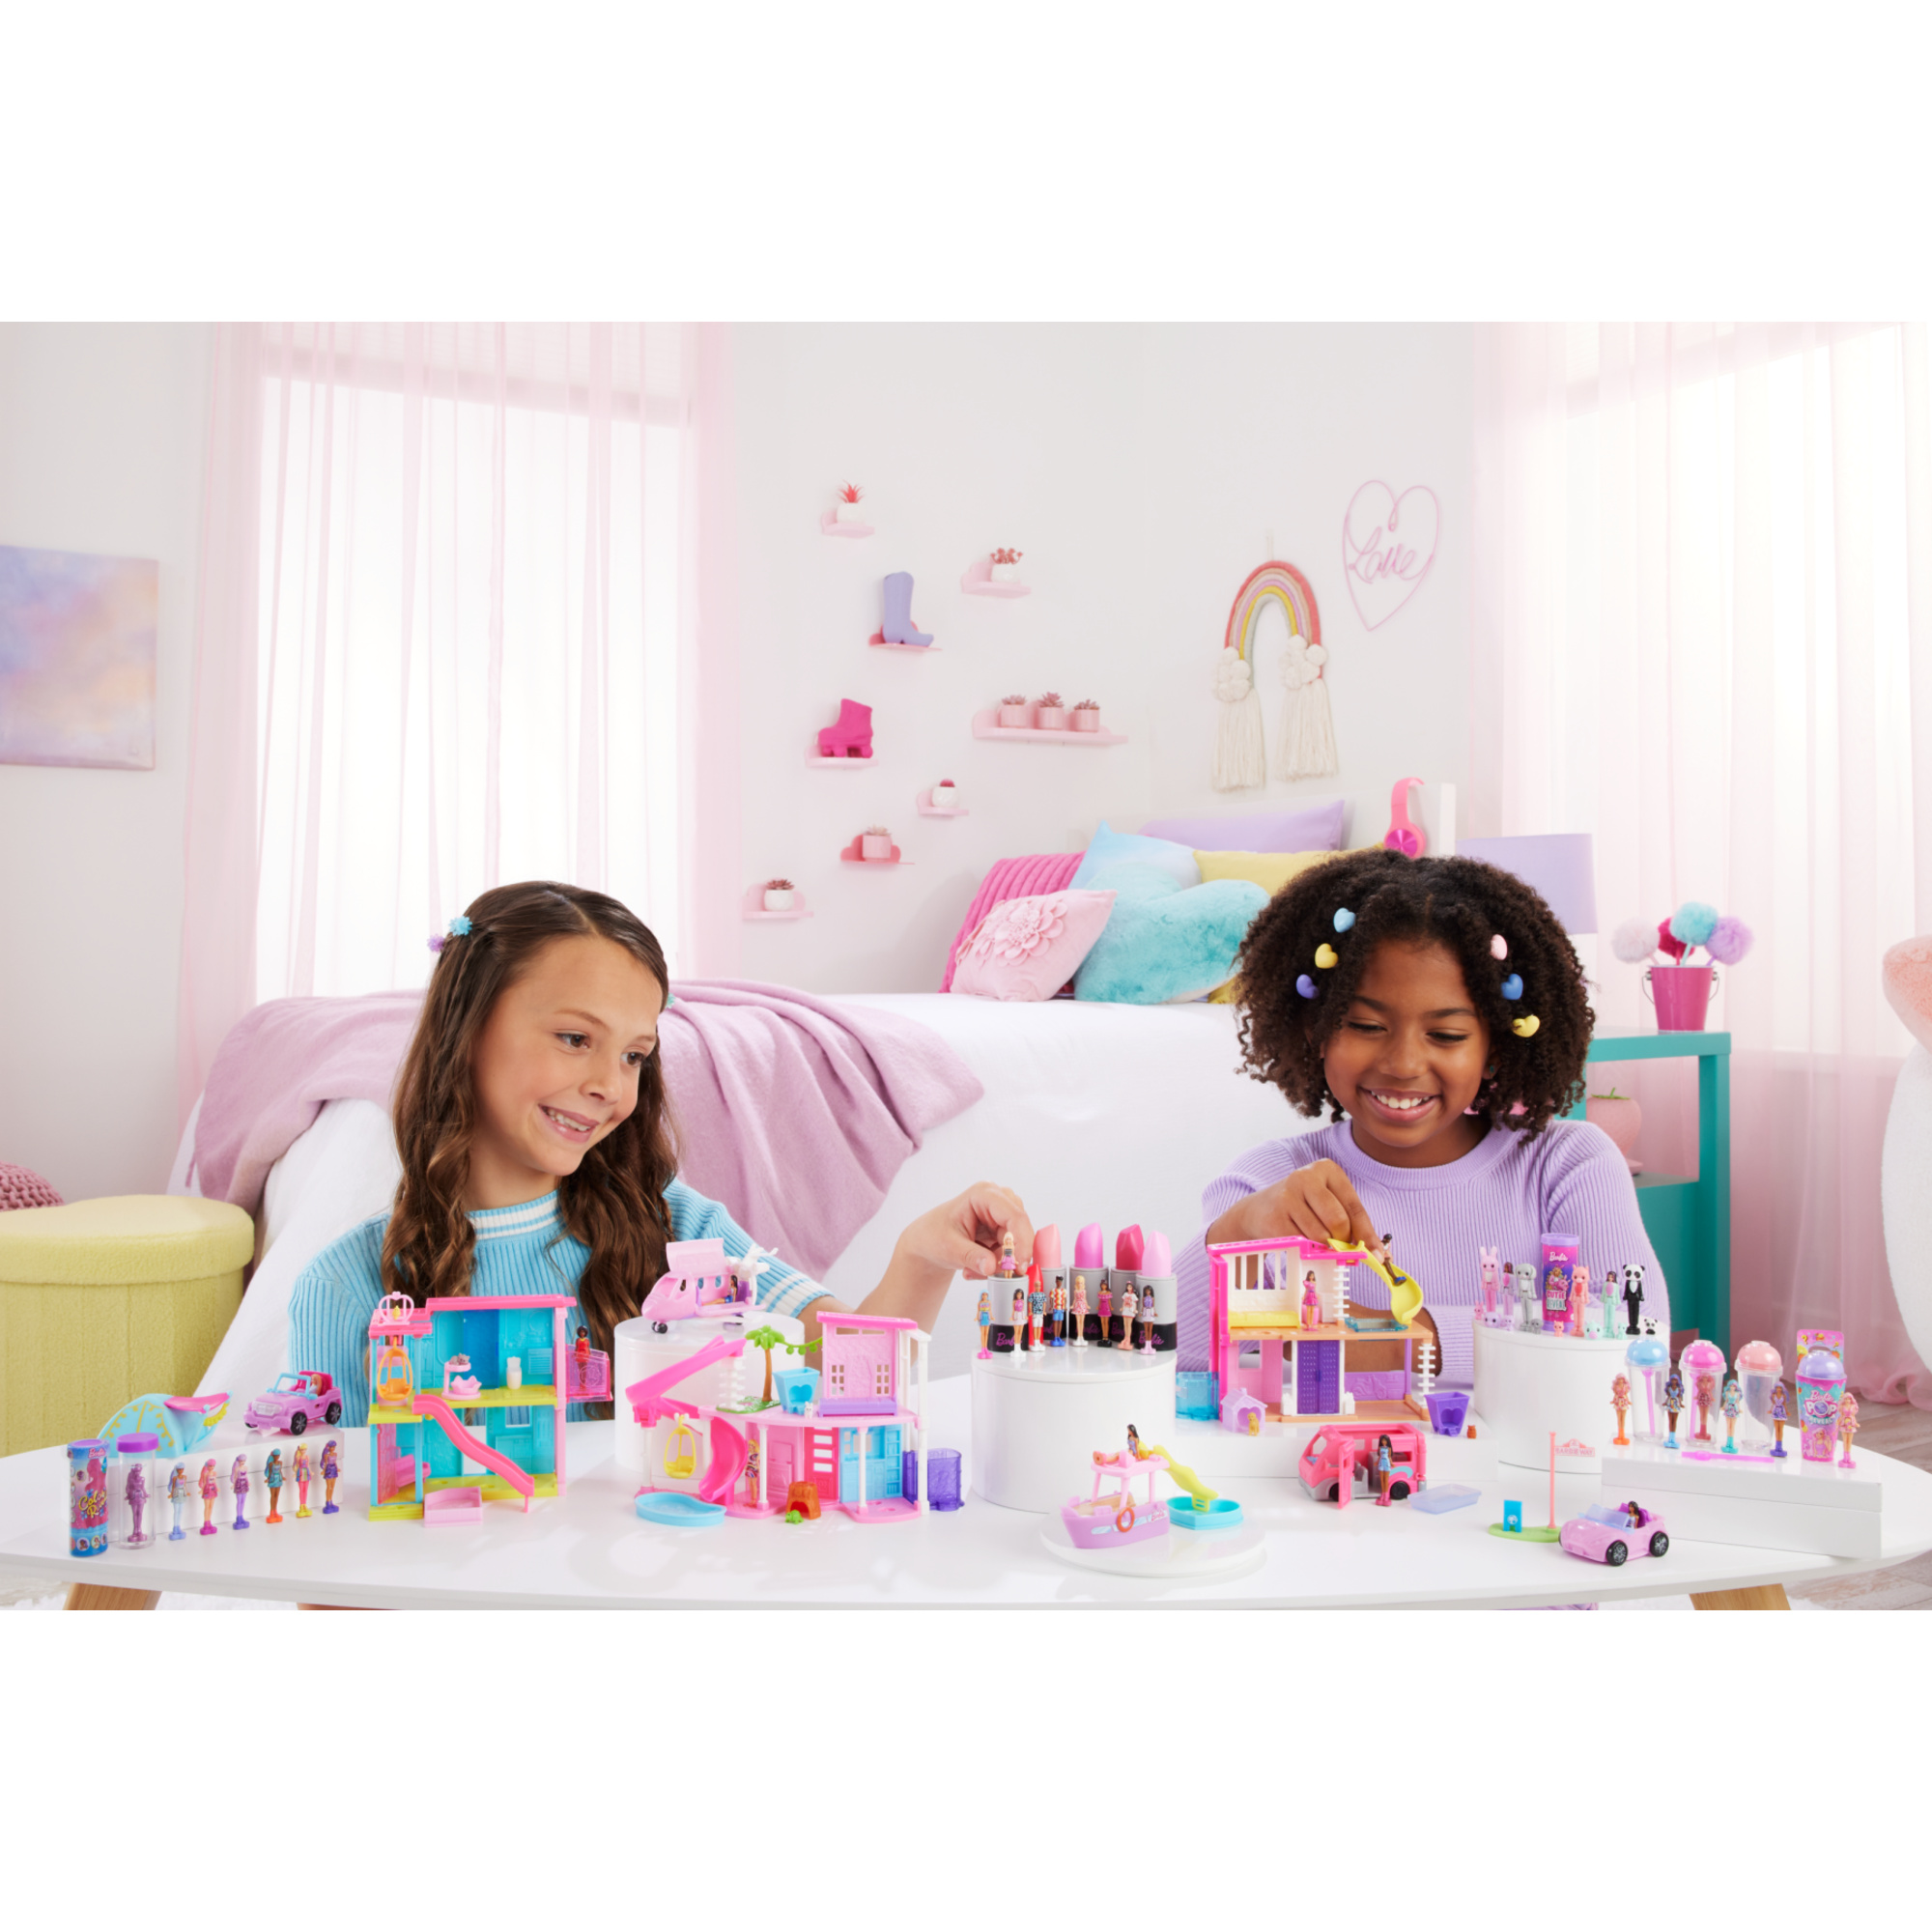 Mini barbieland - fashionistas - mini bambole in un tubetto di rossetto con sorpresa - Barbie